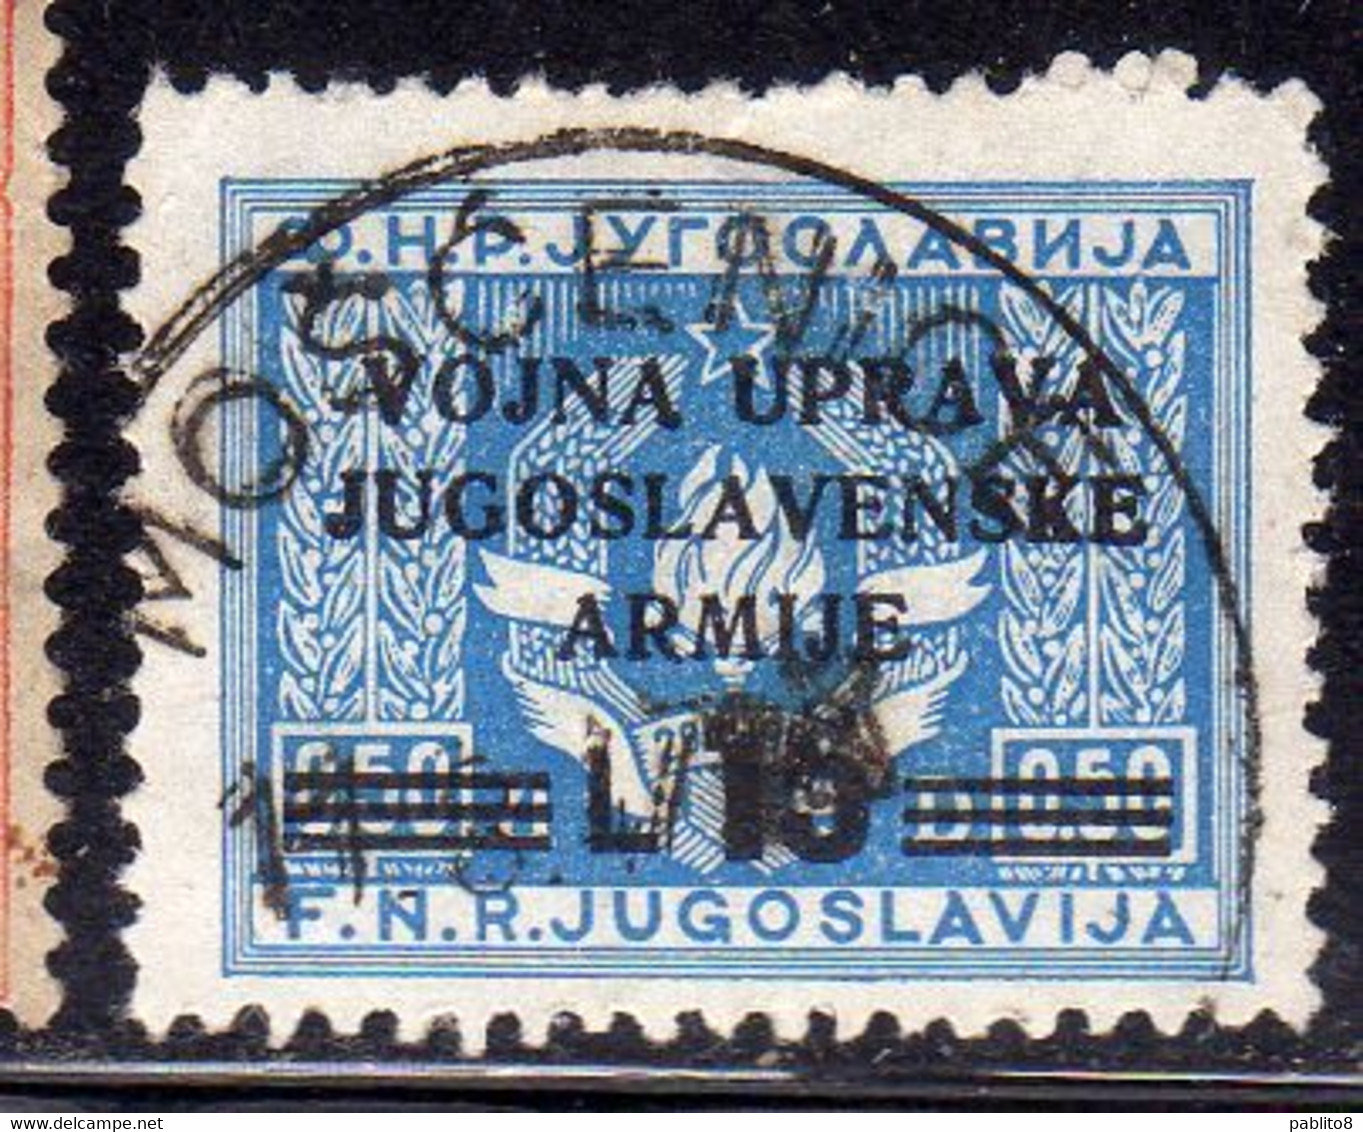 ISTRIA E LITORALE SLOVENO 1947 FRANCOBOLLI DI YUGOSLAVIA L.15 SU 0.50 USATO USED OBLITERE' - Yugoslavian Occ.: Slovenian Shore